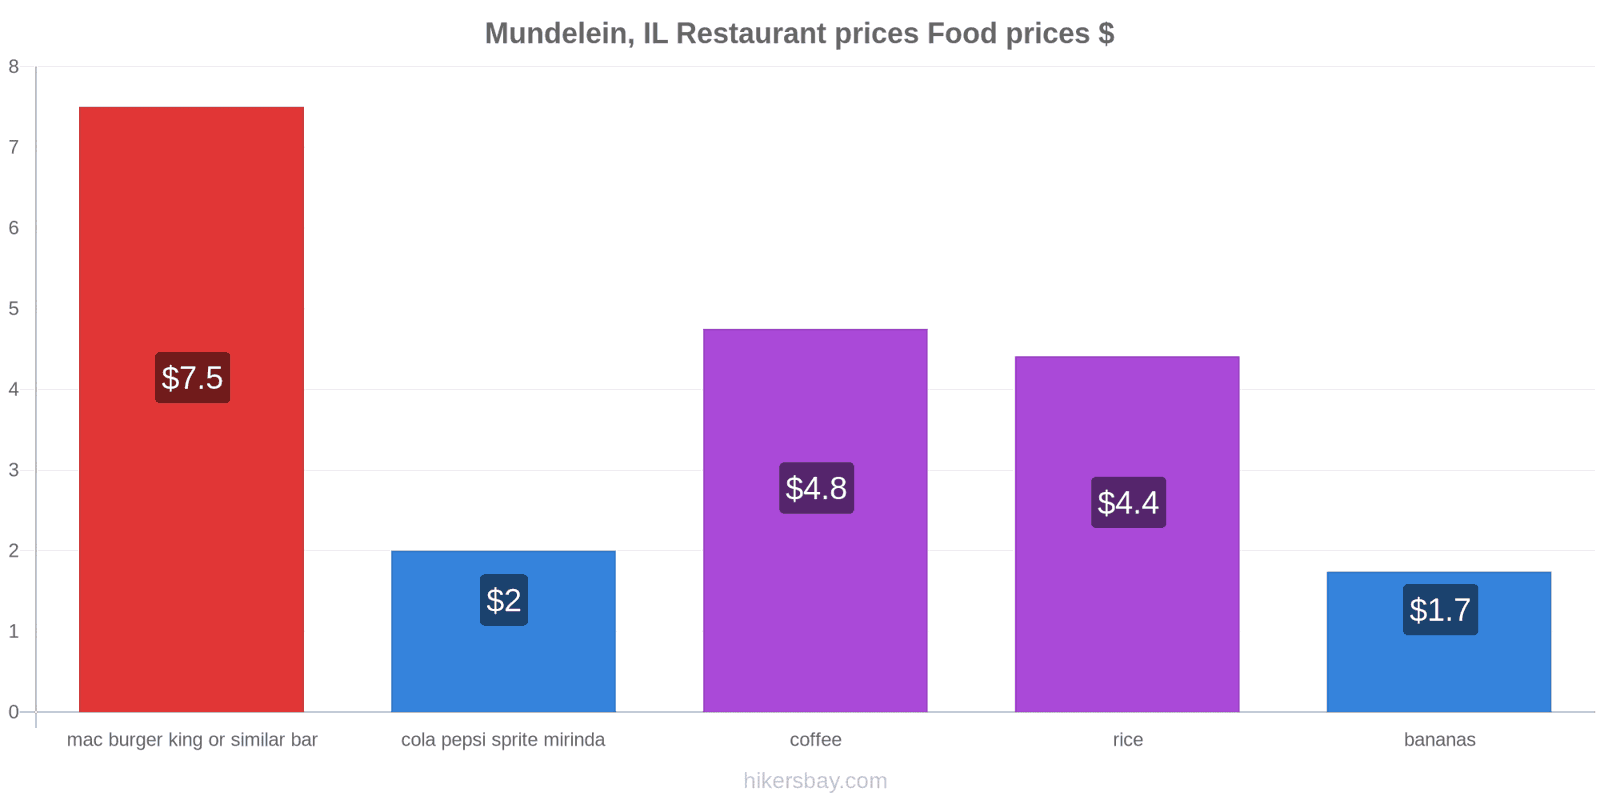 Mundelein, IL price changes hikersbay.com